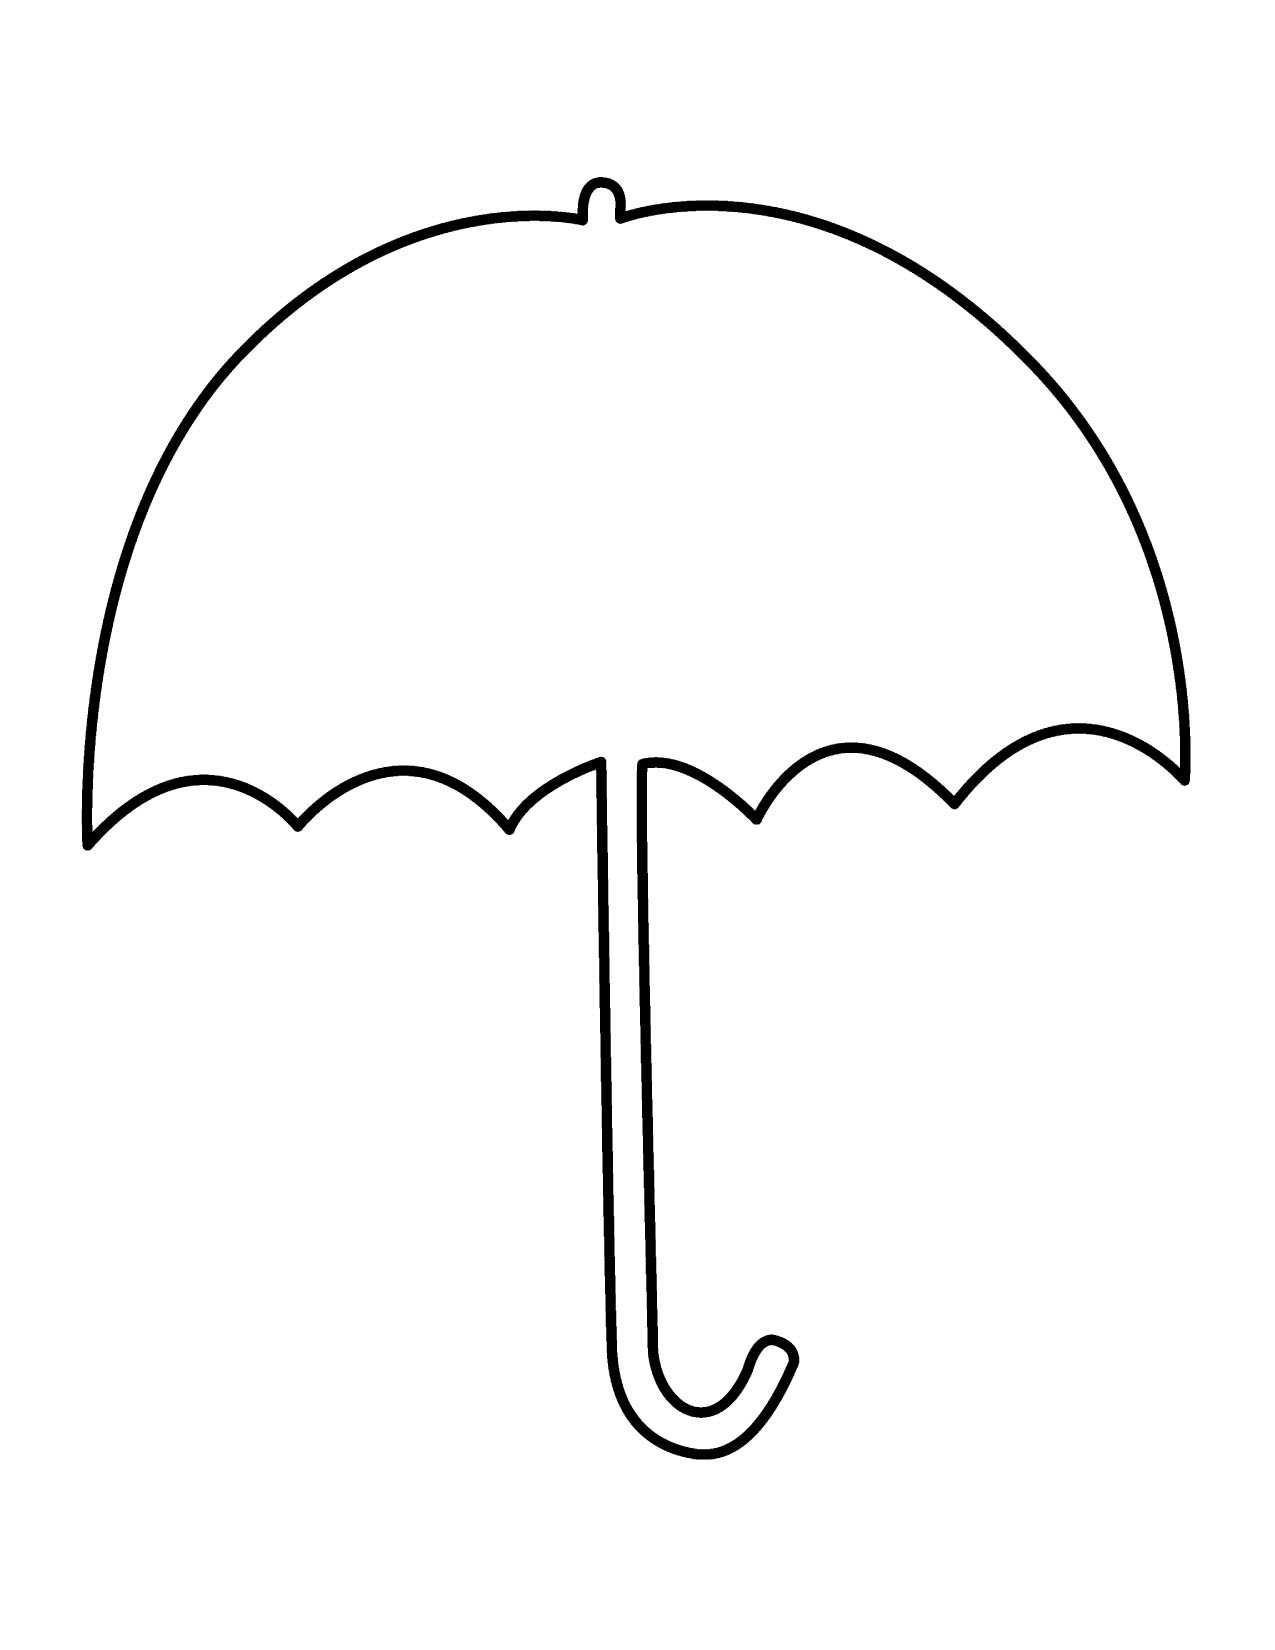 Closed Umbrella Outline Images Pictures – Becuo – Clip Art Regarding Blank Umbrella Template